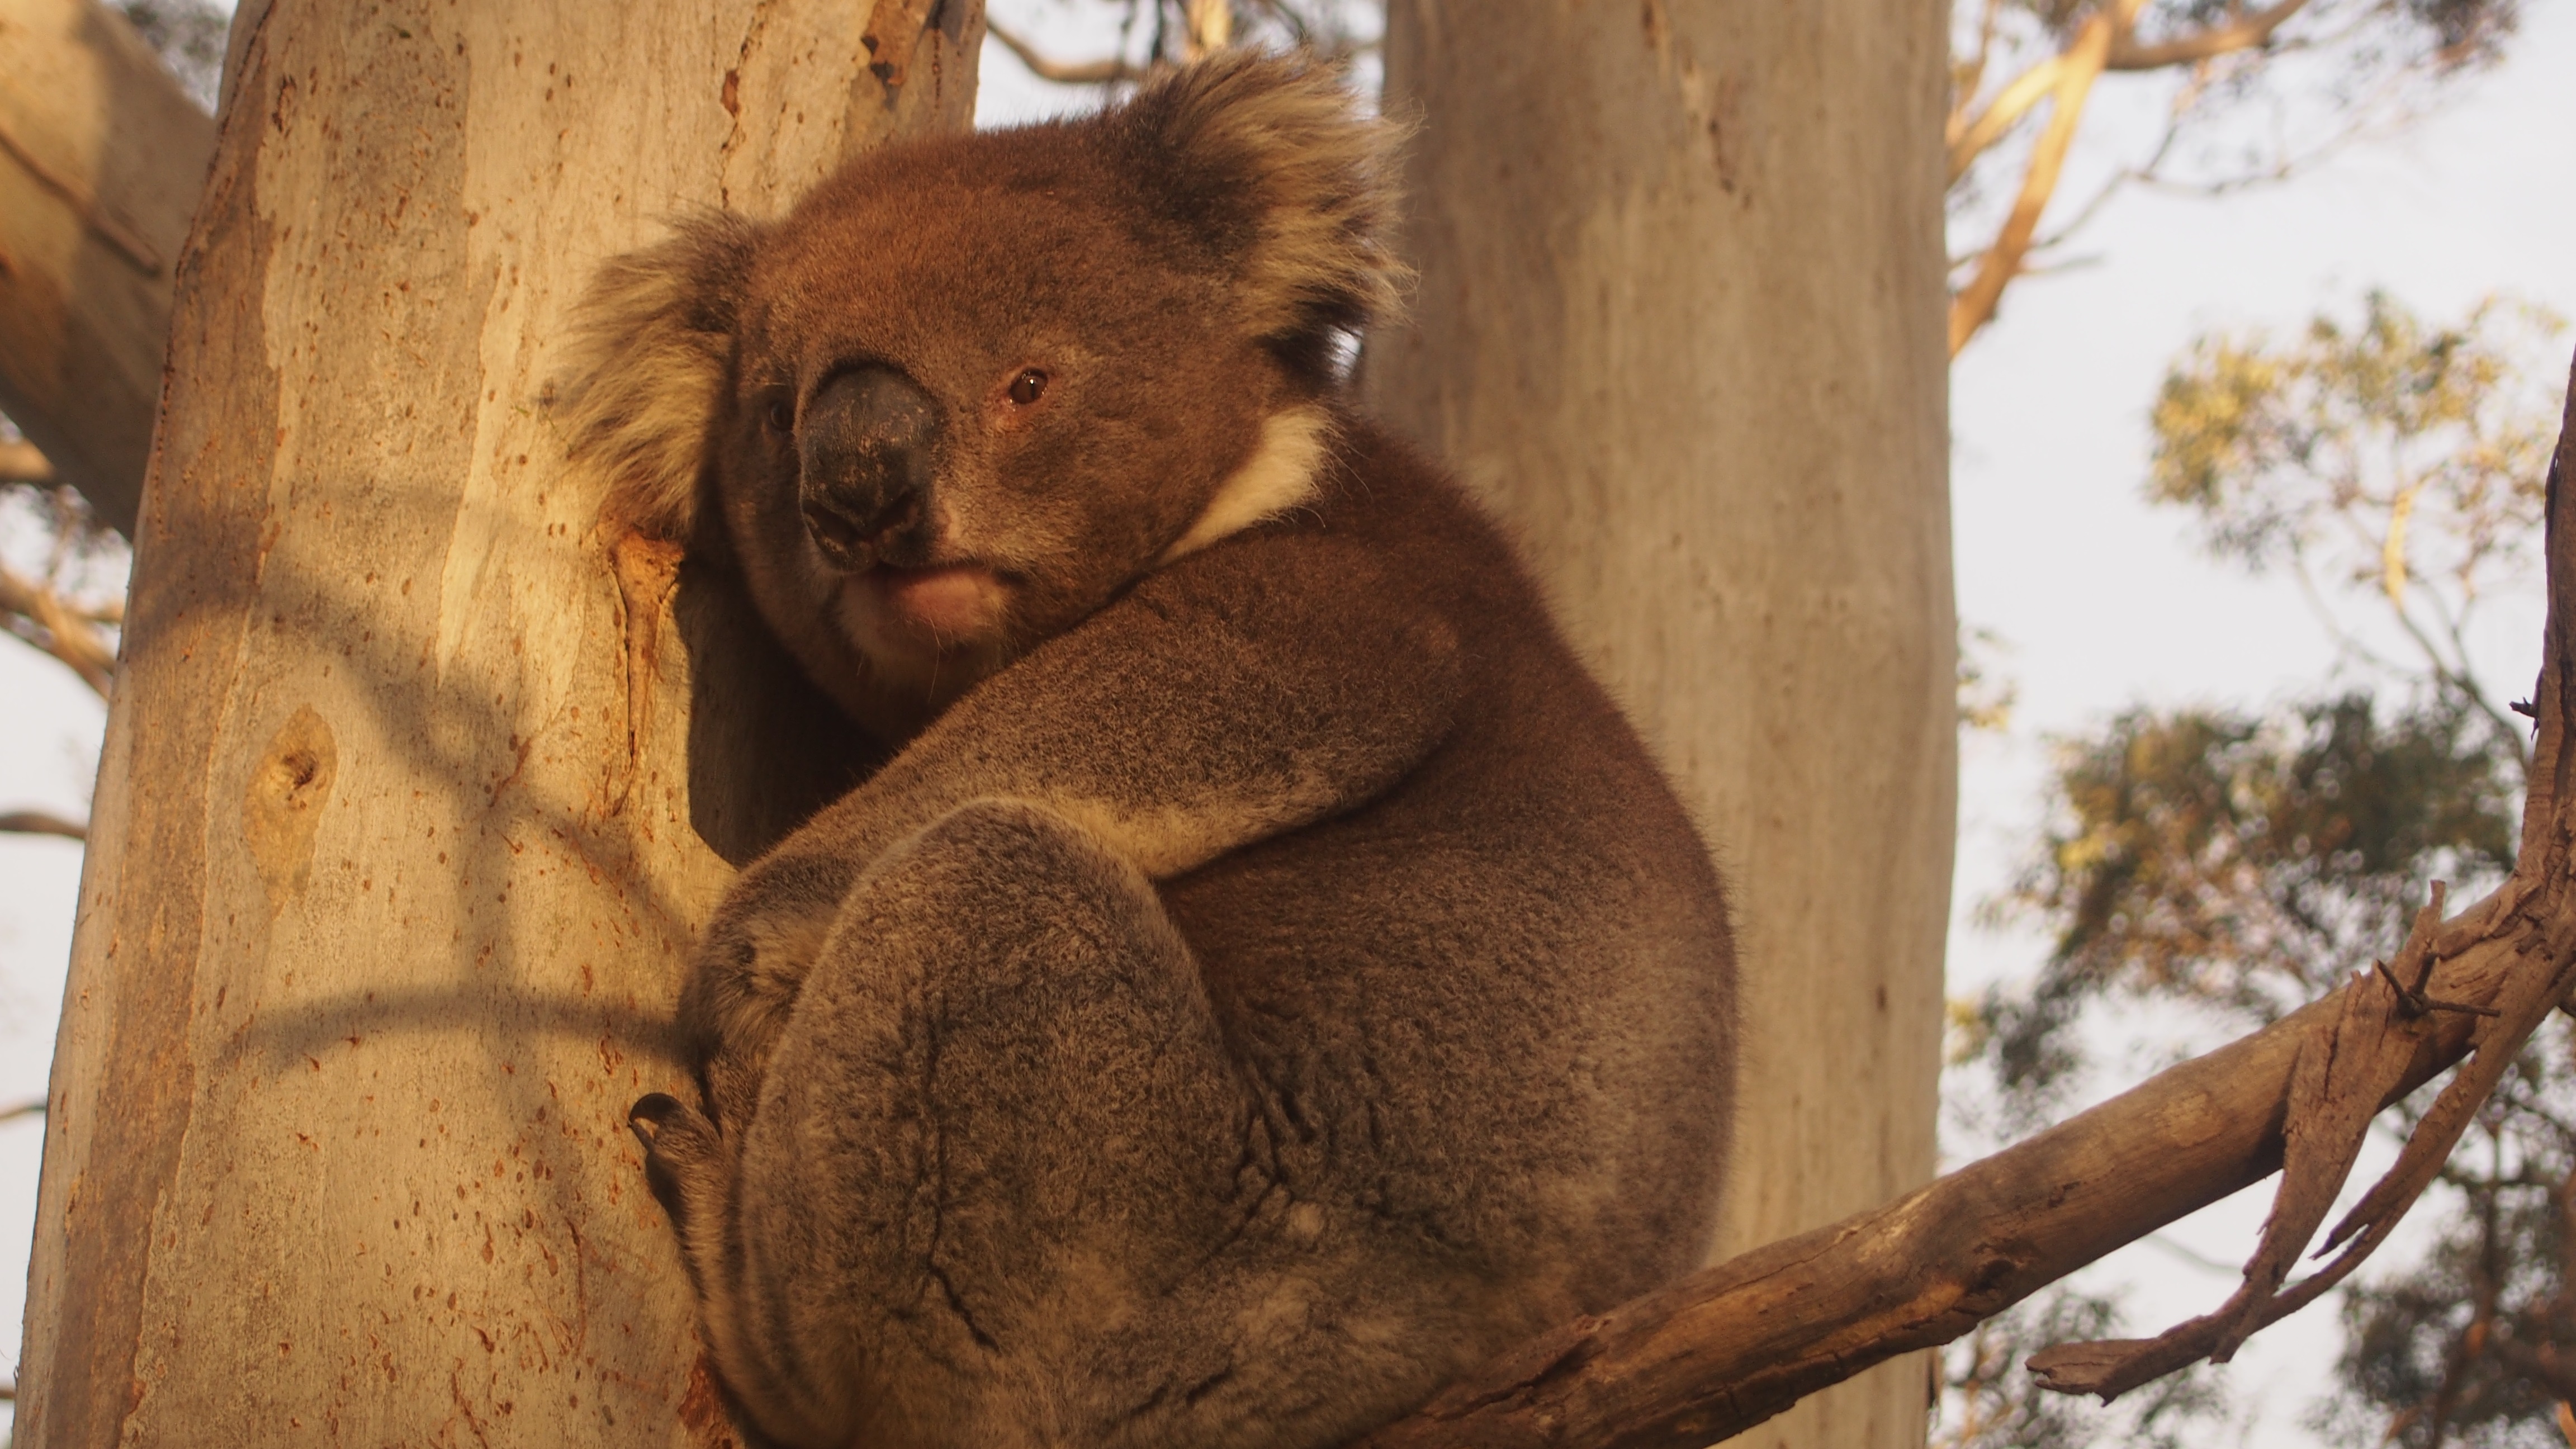 Koalas South Australia Australia Oceania Animals Marsupial 4608x2592